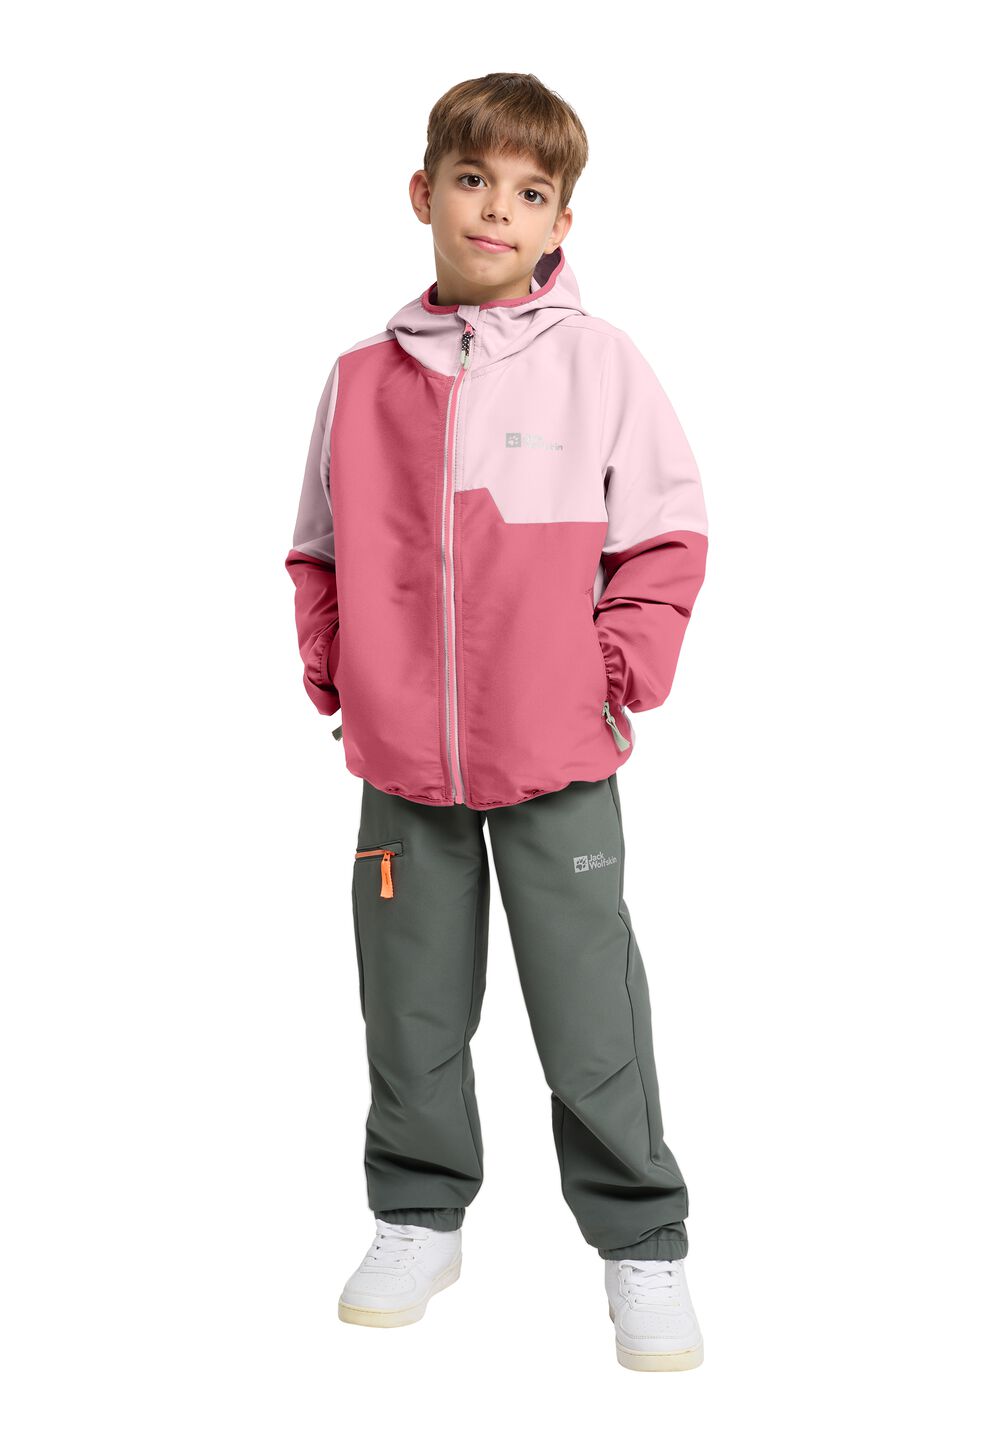 Jack Wolfskin Turbulence Hooded Jacket Kids Softshelljack Kinderen 128 soft pink soft pink